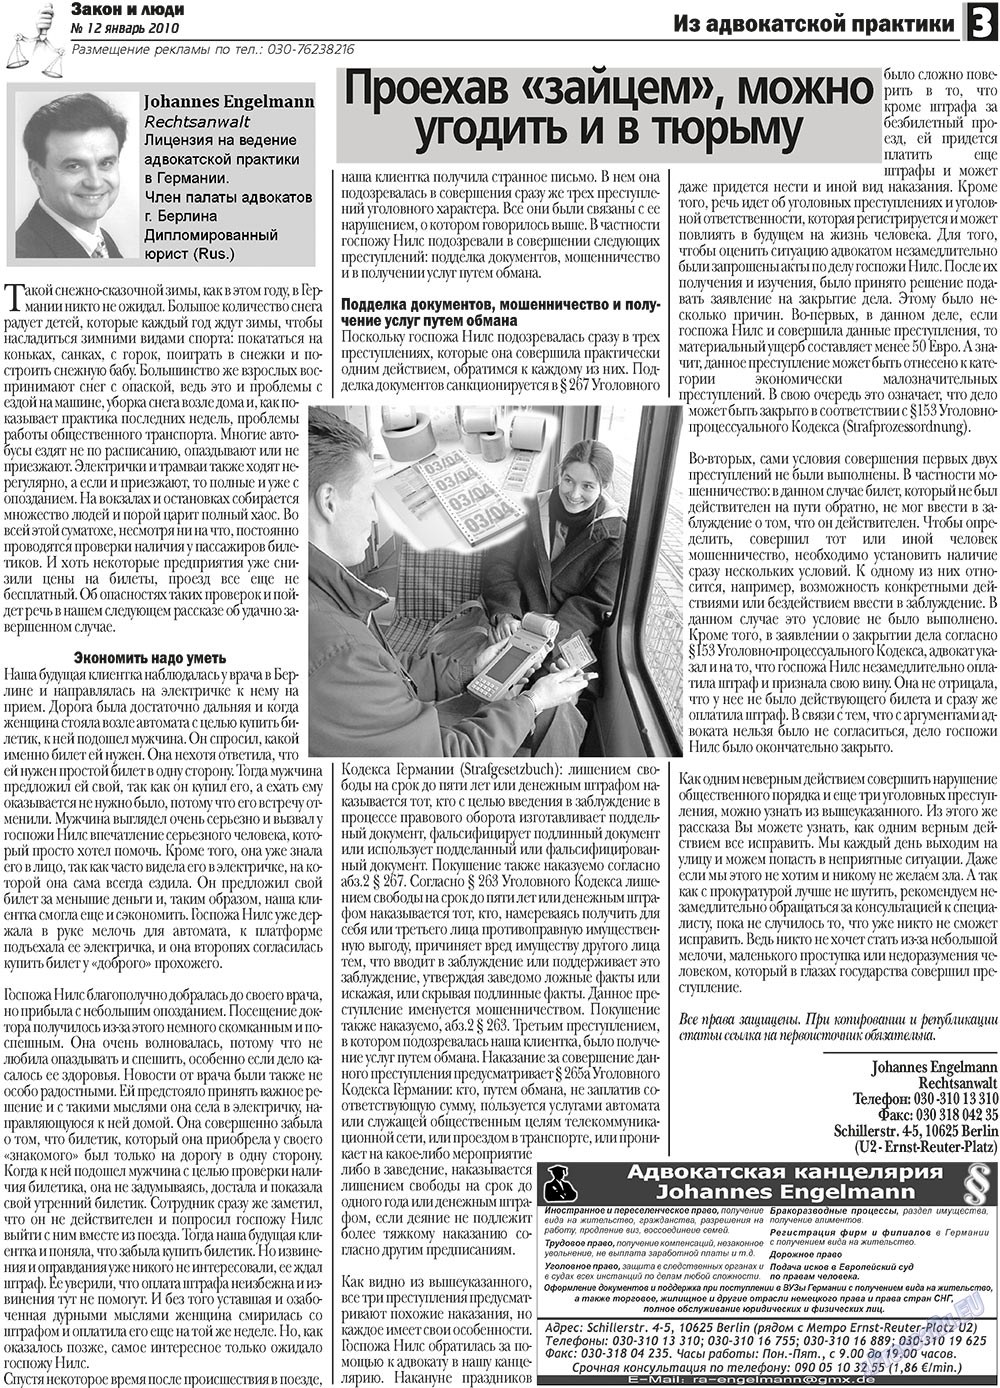 Закон и люди (газета). 2011 год, номер 1, стр. 3